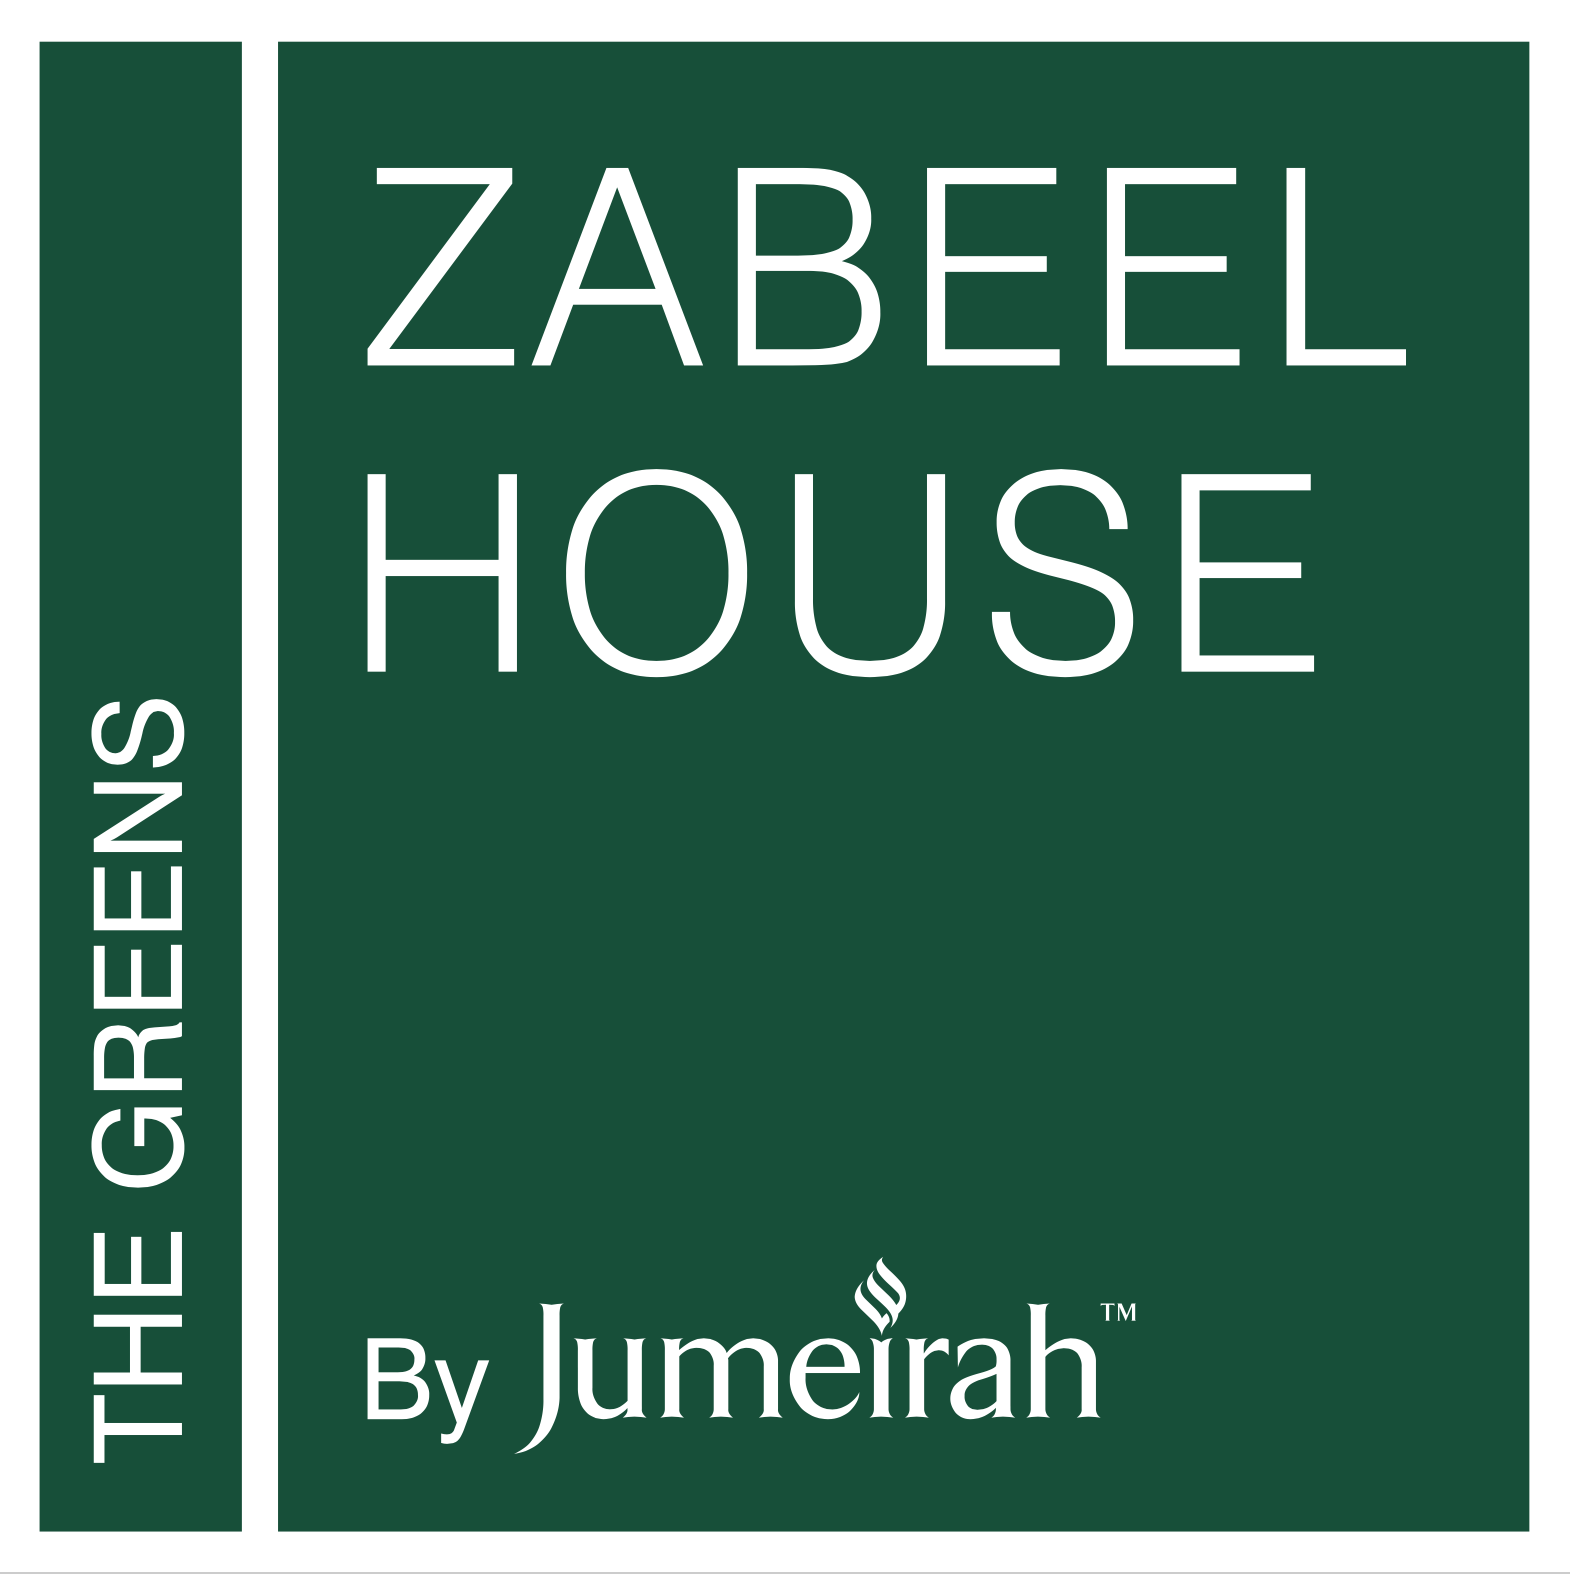 zabeel_house_logo